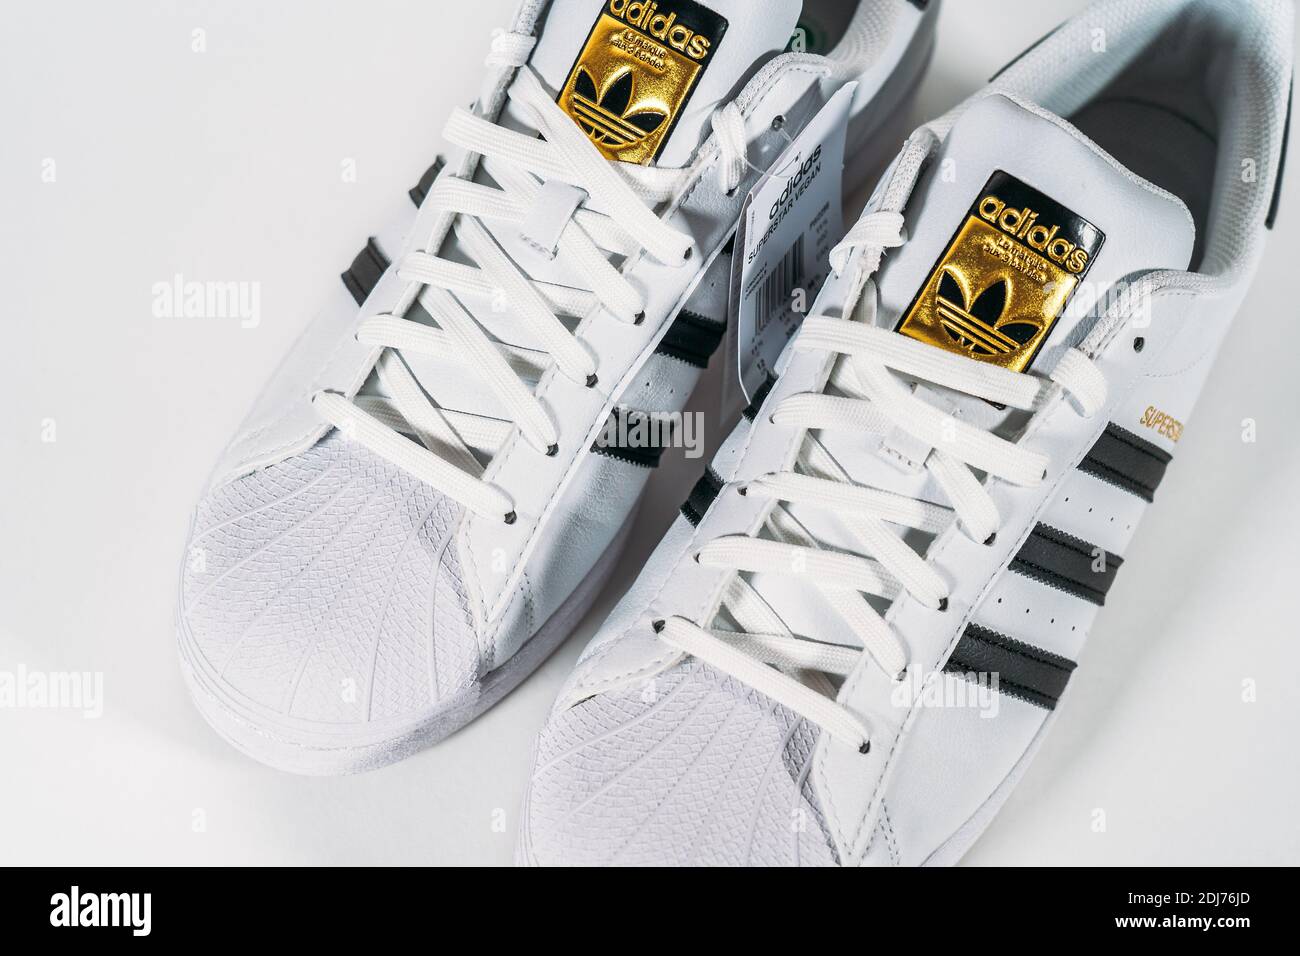 Adidas Superstar - modèle sneaker célèbre produit par le fabricant allemand d'équipements et accessoires de sport Adidas. Chaussures de basket-ball rétro, en production depuis 1969 - Moscou, Russie - novembre 2020. Banque D'Images